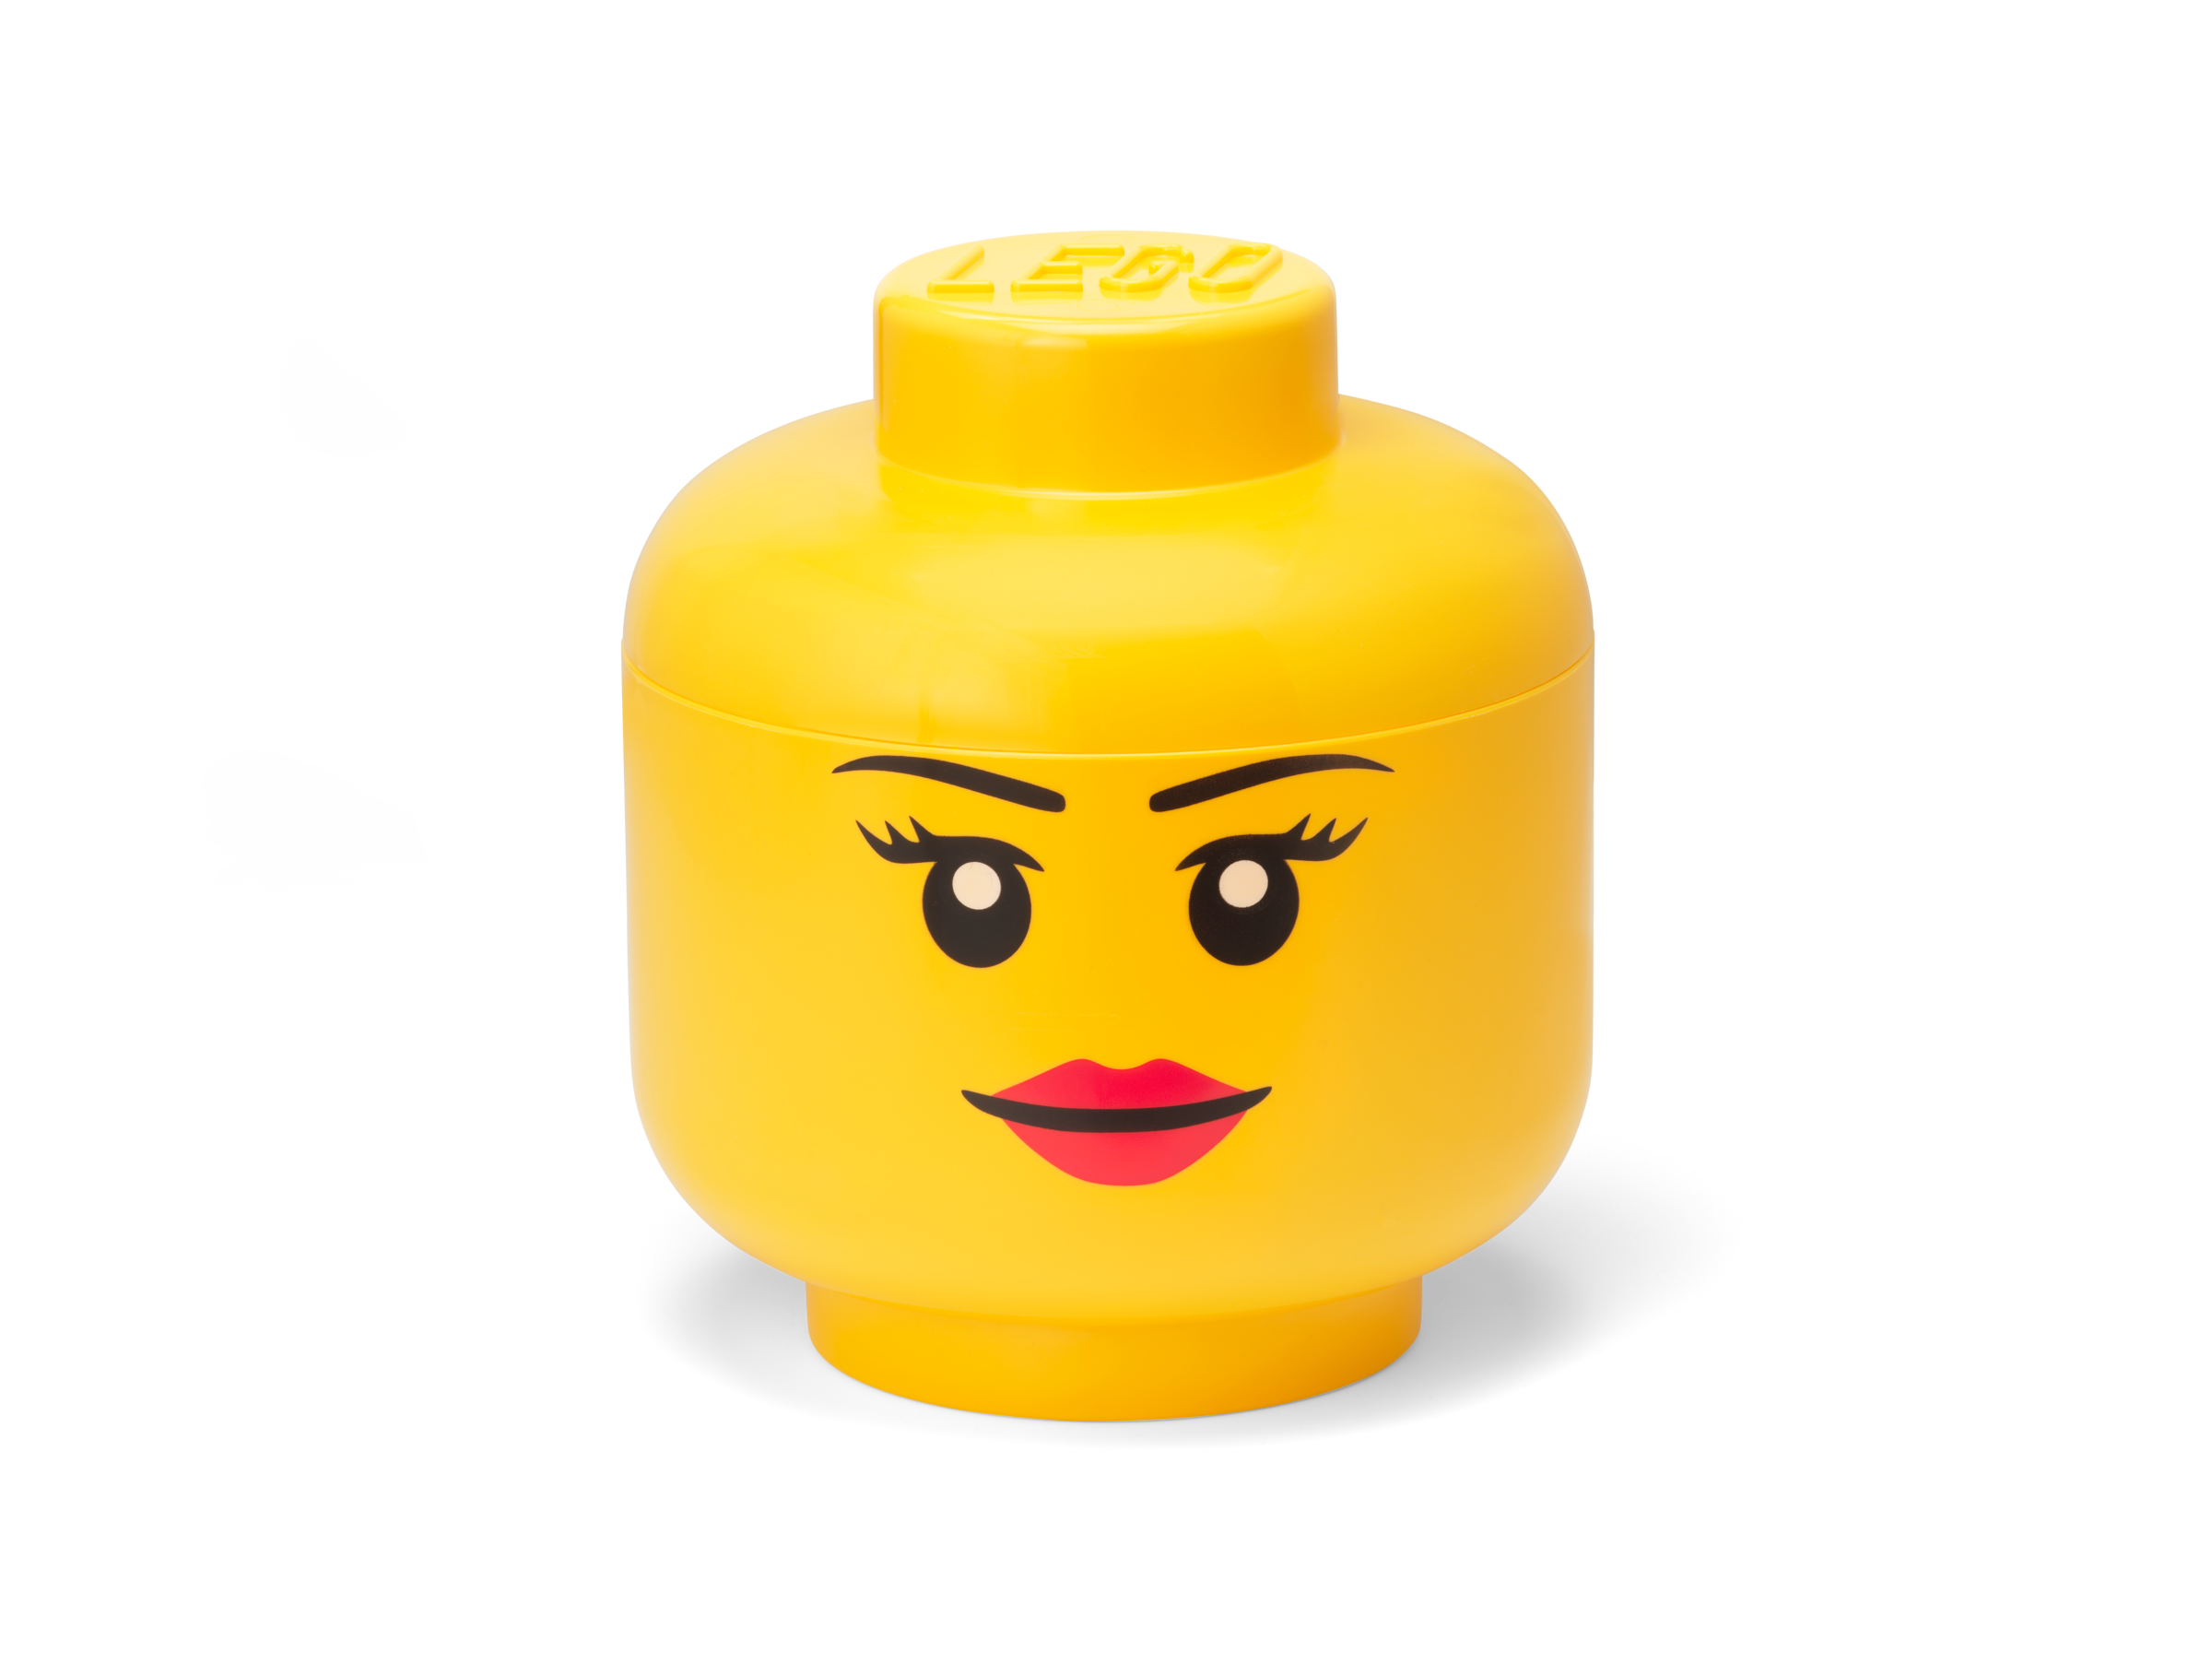 4 New Lego Mens Minifigure Heads Versand Am Selben Tag Gutes Produkt Online Kostenlose Lieferung